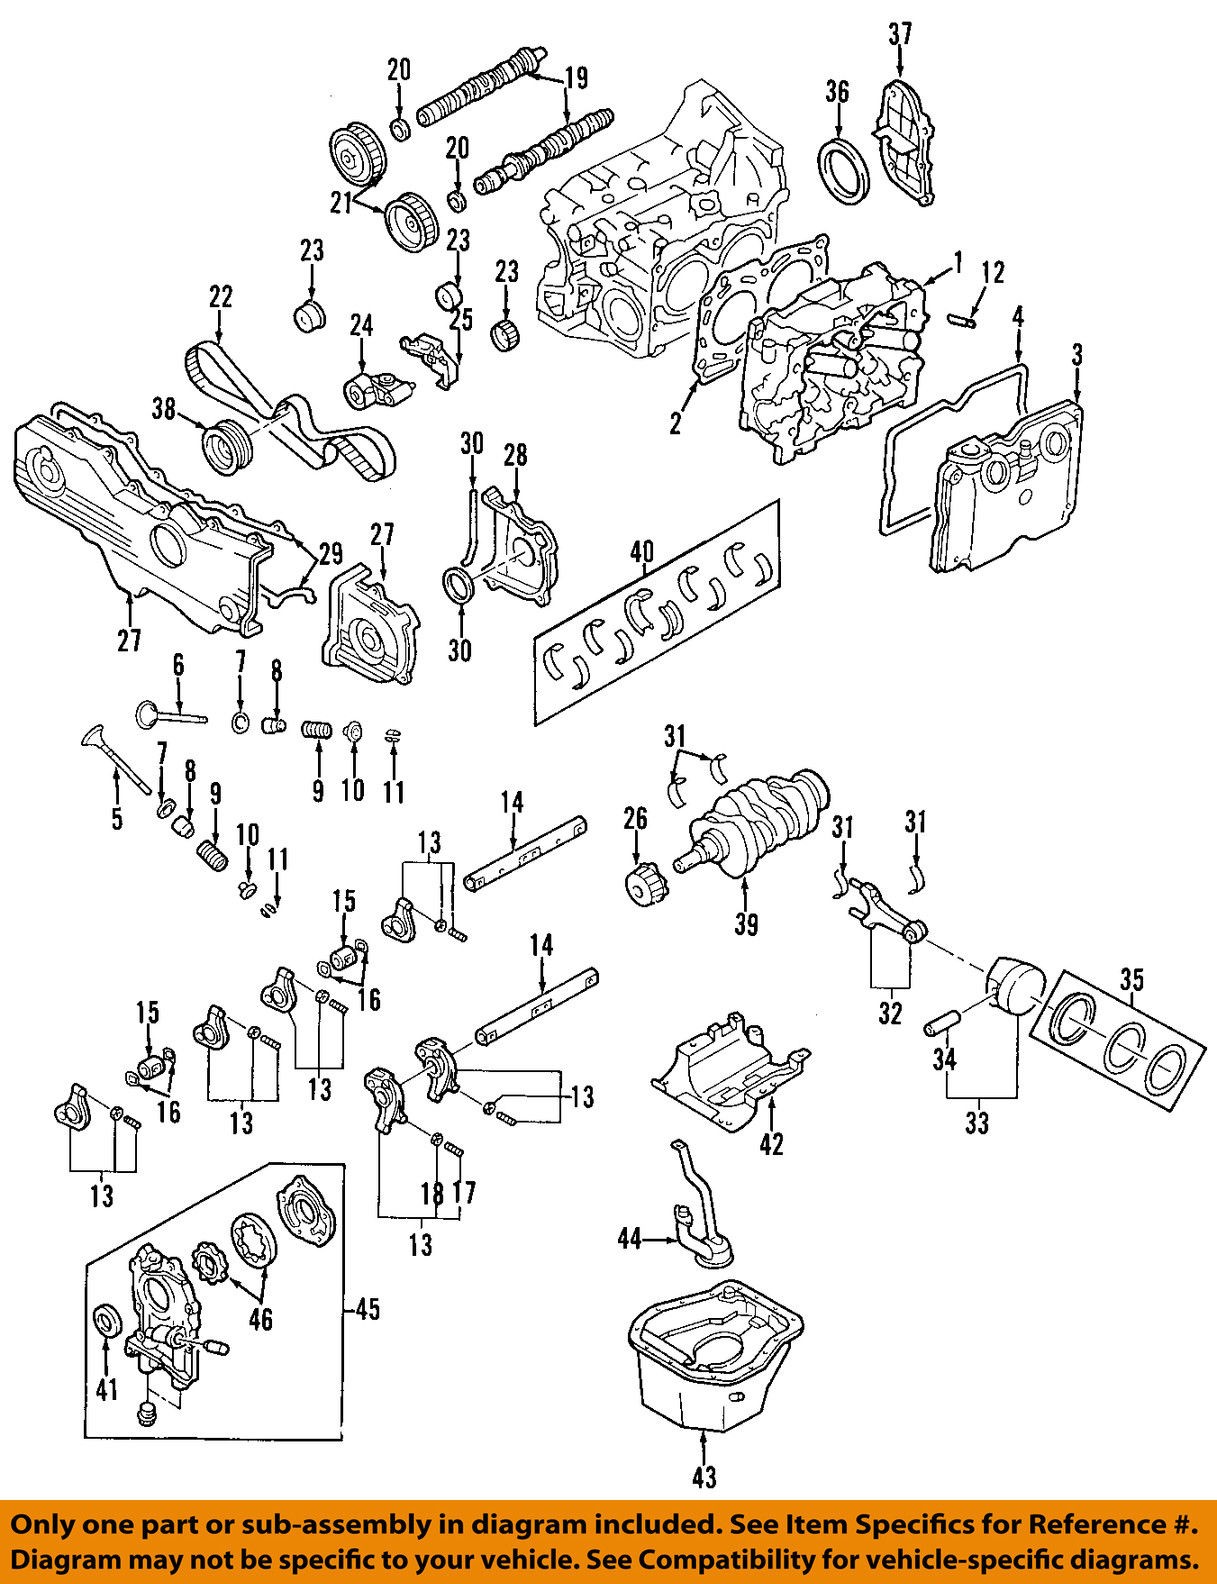 Subaru Ej25 Engine Diagram Subaru Aa633 Head Gasket Of Subaru Ej25 Engine Diagram